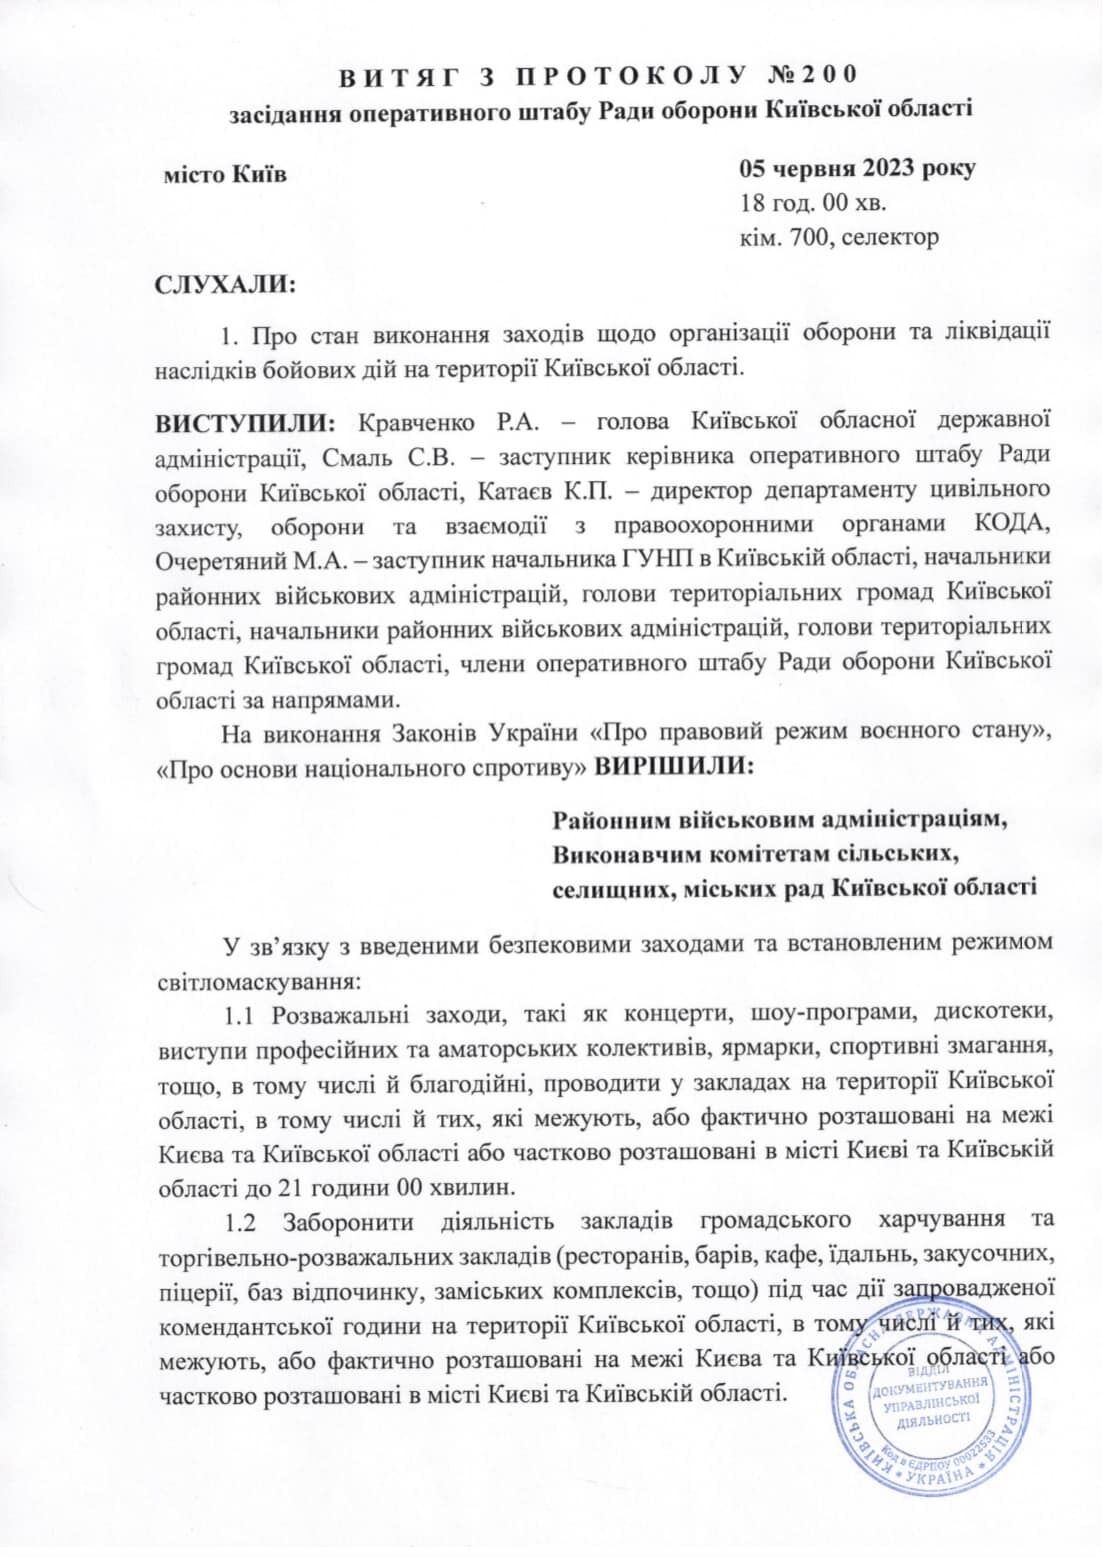 Рішення про обмеження часу проведення розважальгних заходів у Києві та області